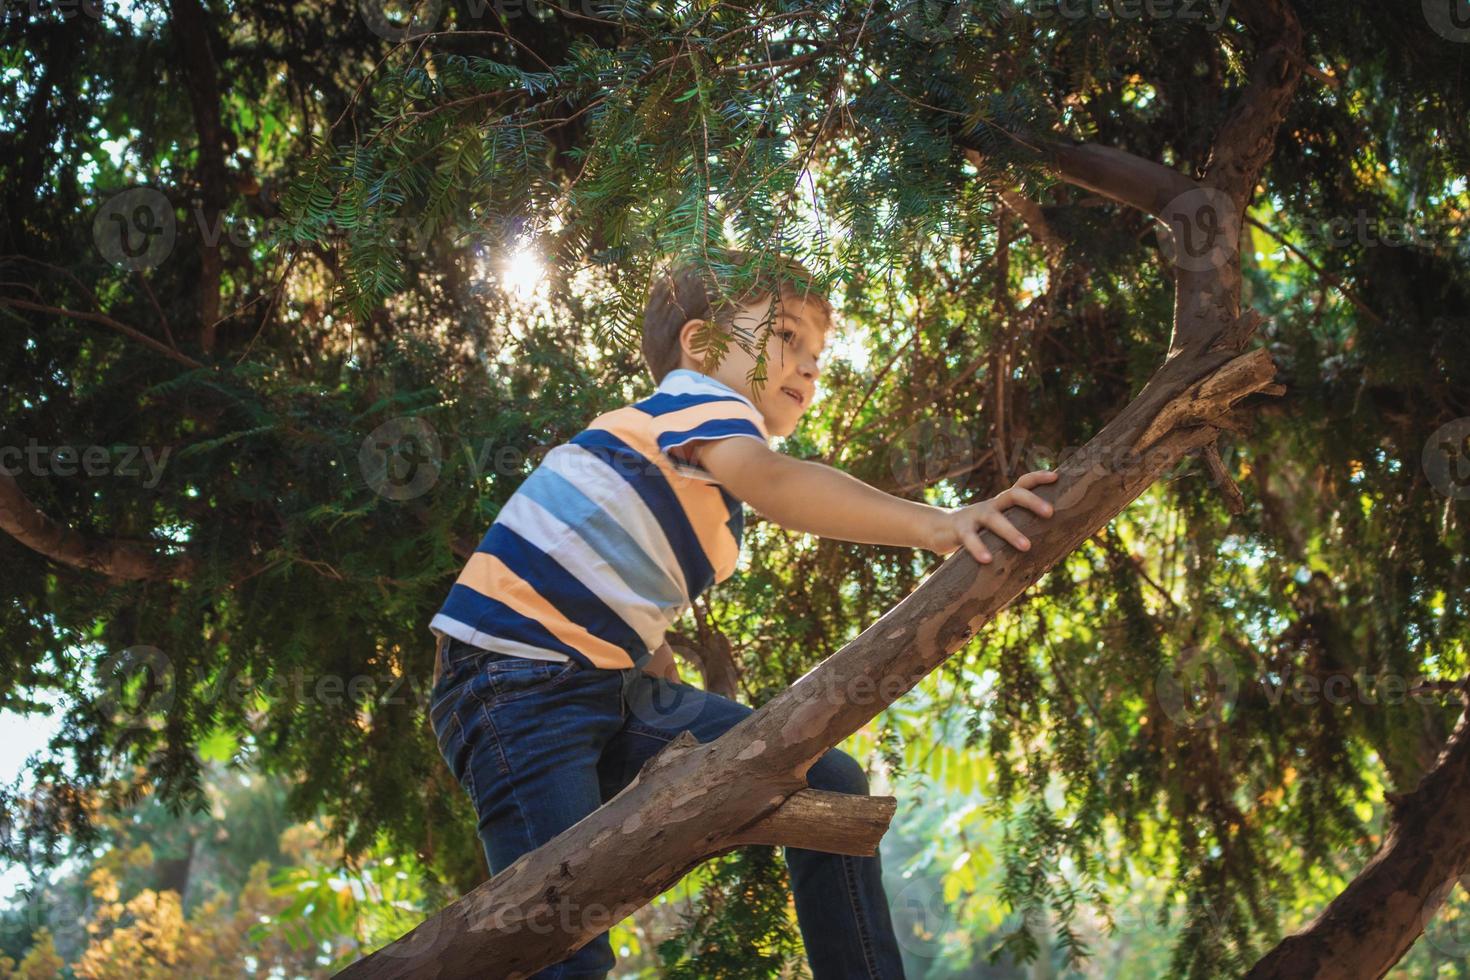 menino subindo em uma árvore enquanto brincava na natureza. foto